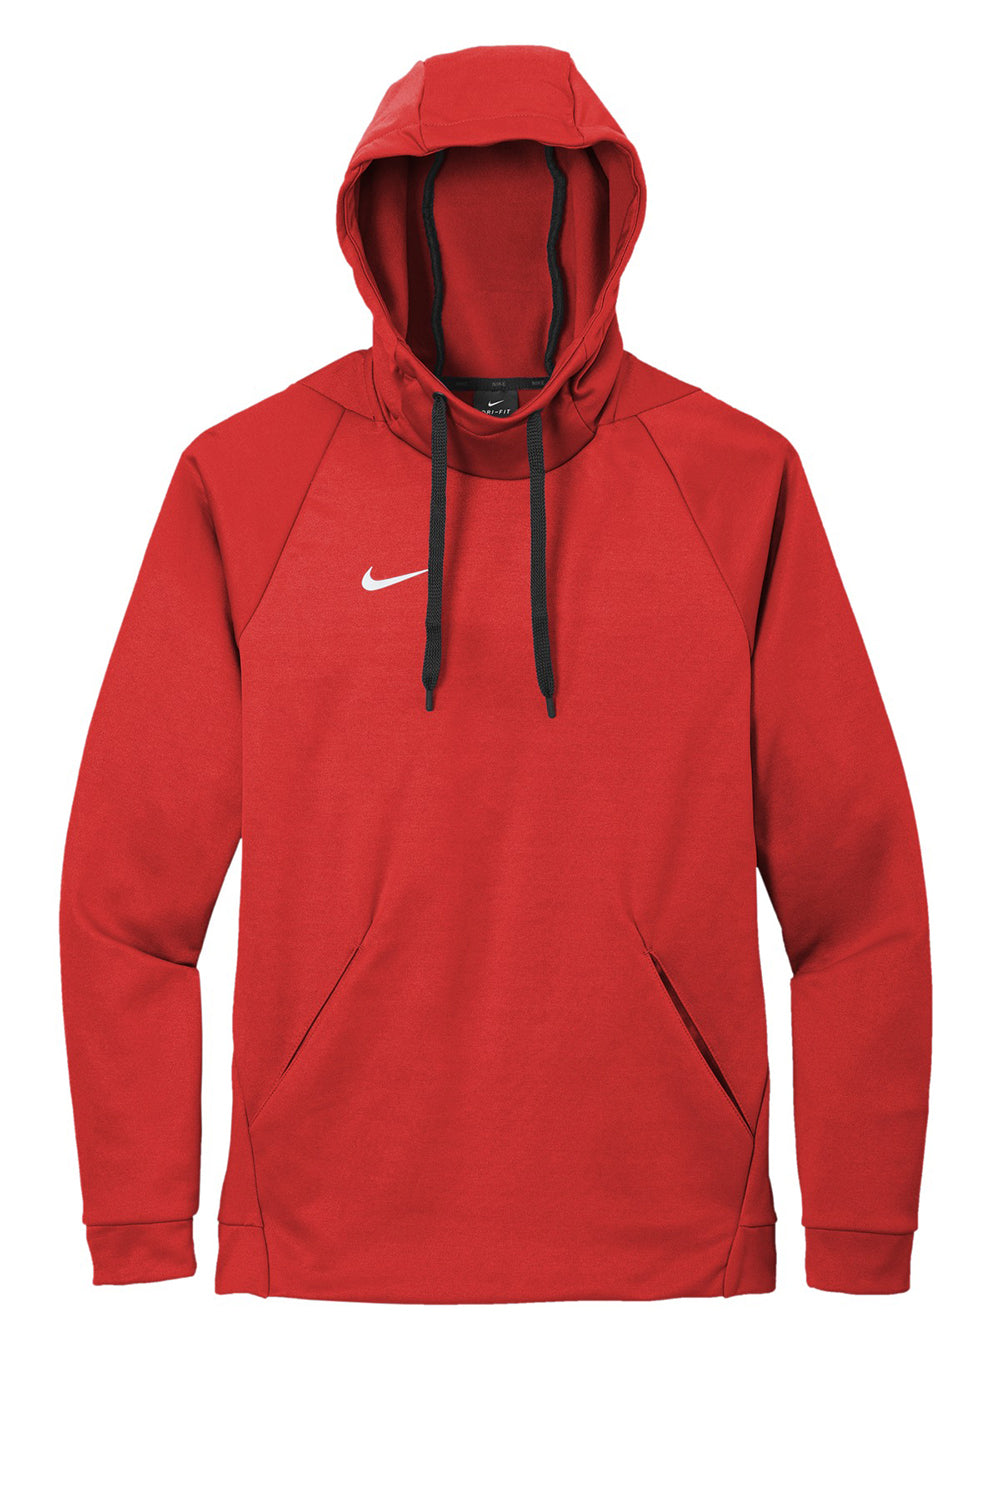 Nike CN9473 Mens Therma-Fit Moisture Wicking Fleece Hooded Sweatshirt Hoodie Team Scarlet Red Flat Front